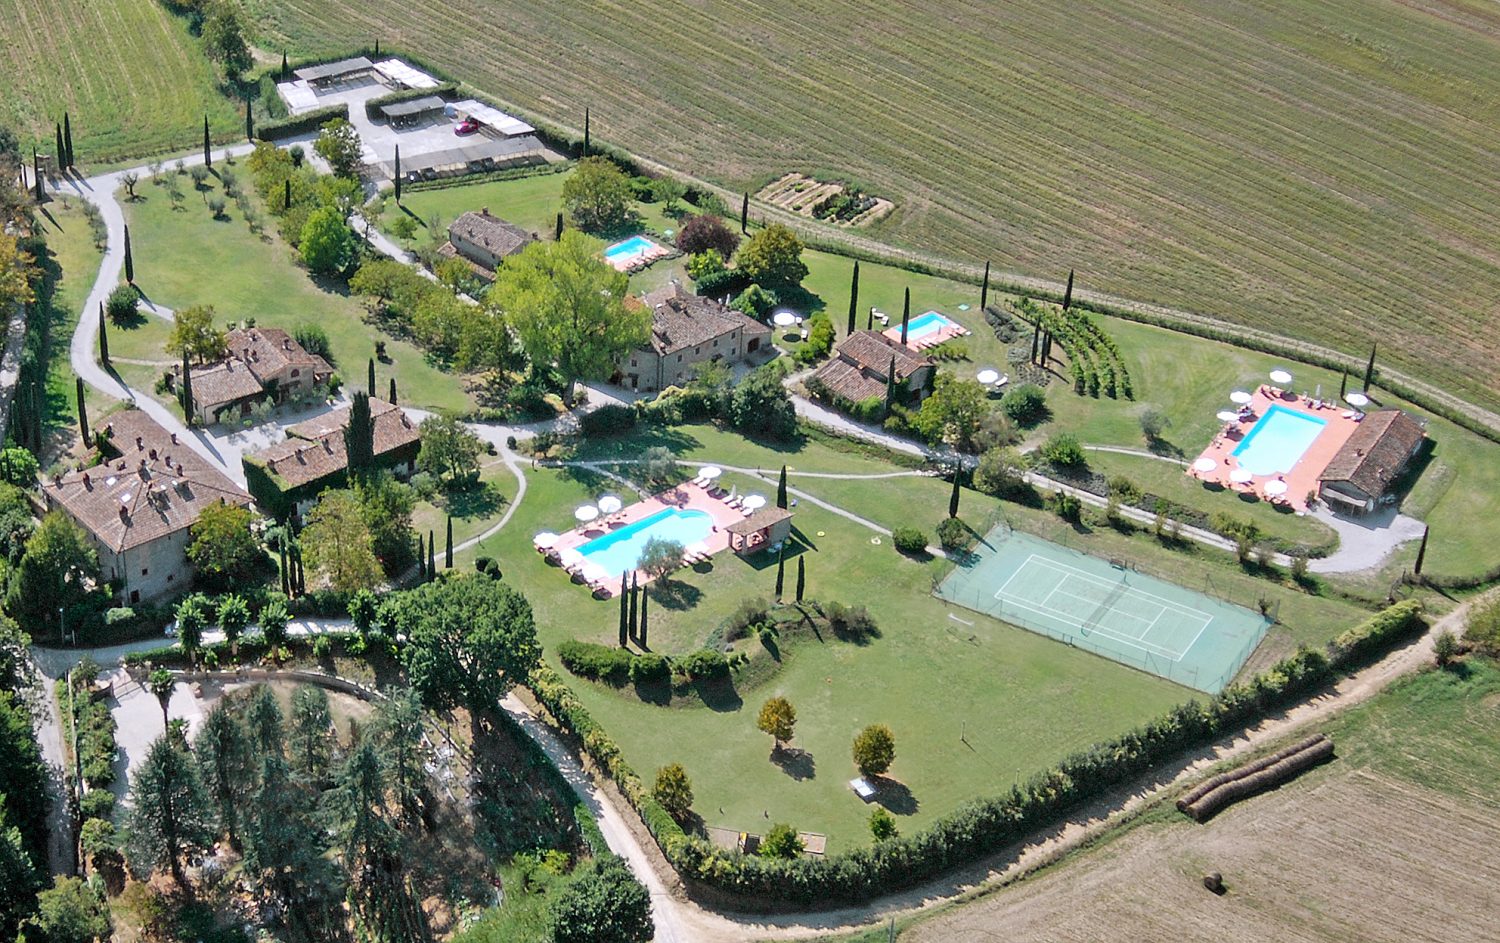 Monsignore della Casa Country Resort & SPA, hotel lusso per weekend in Toscana, si trova in Mugello vicino all'Autodromo e a 30 min da Firenze